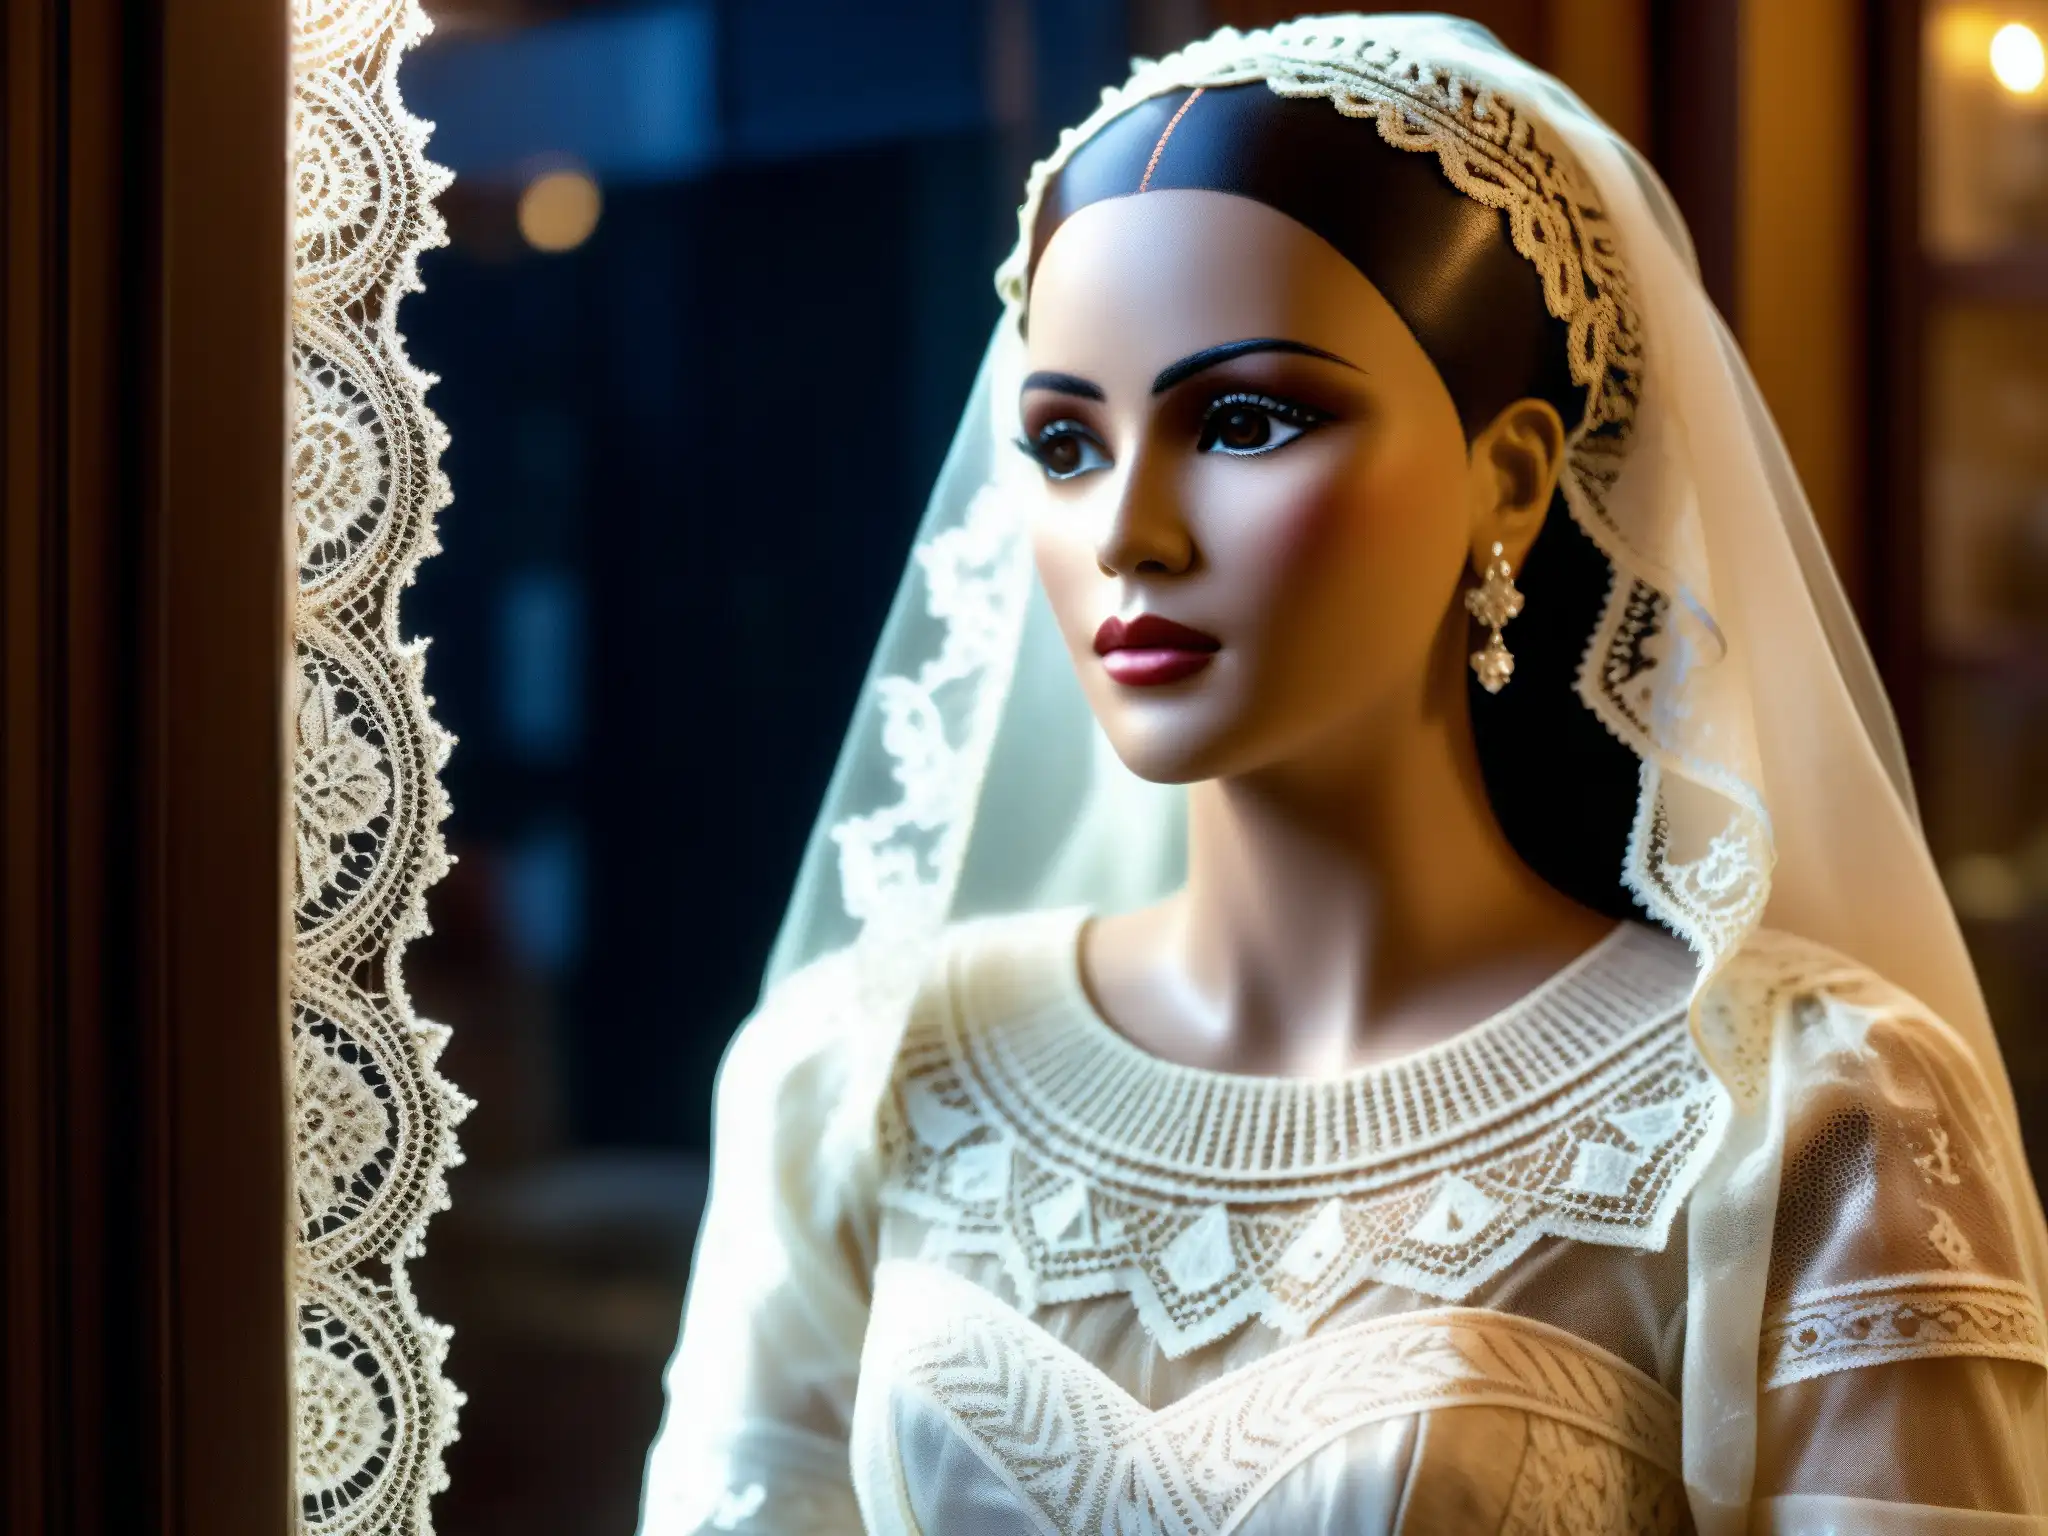 La Pascualita, el maniquí momificado, luce su vestido de novia en la tenue luz de la tienda, cautivando con su misteriosa belleza